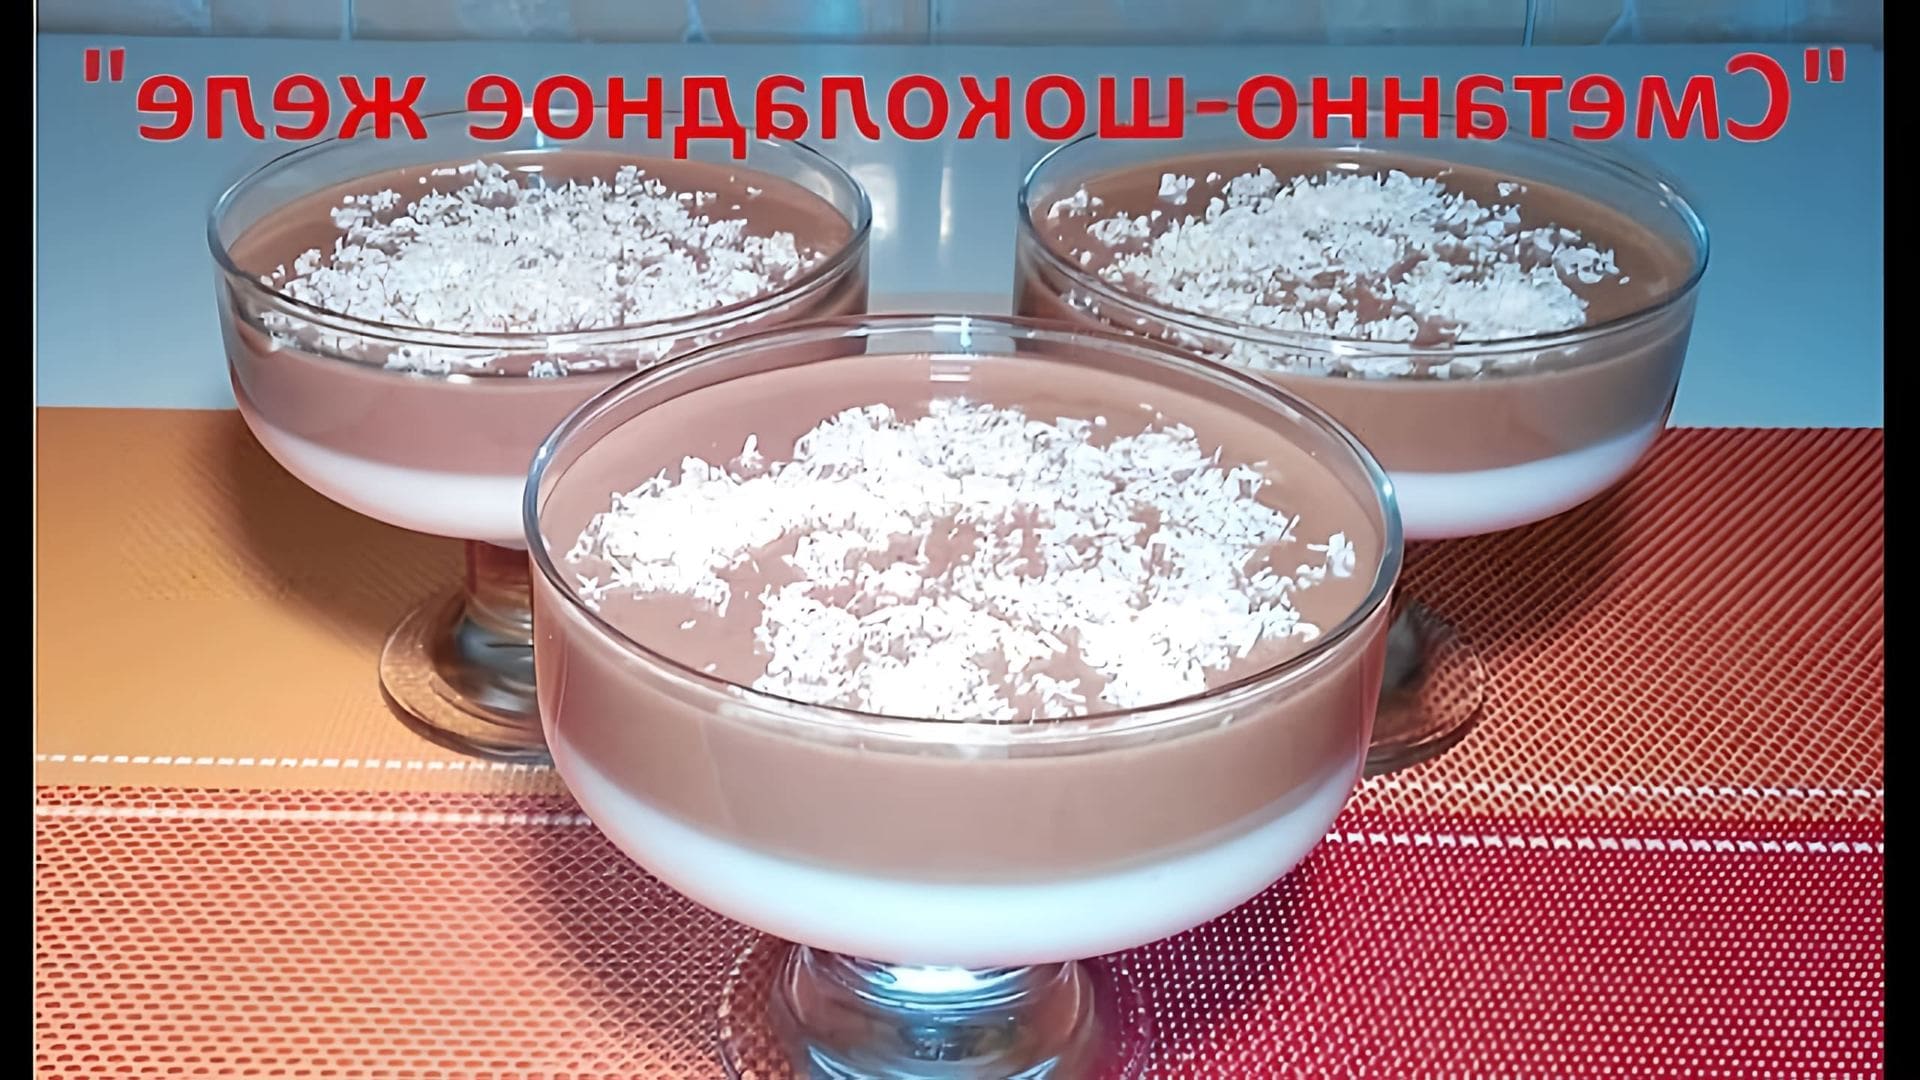 В этом видео демонстрируется рецепт приготовления желейного десерта со сметанно-шоколадным вкусом